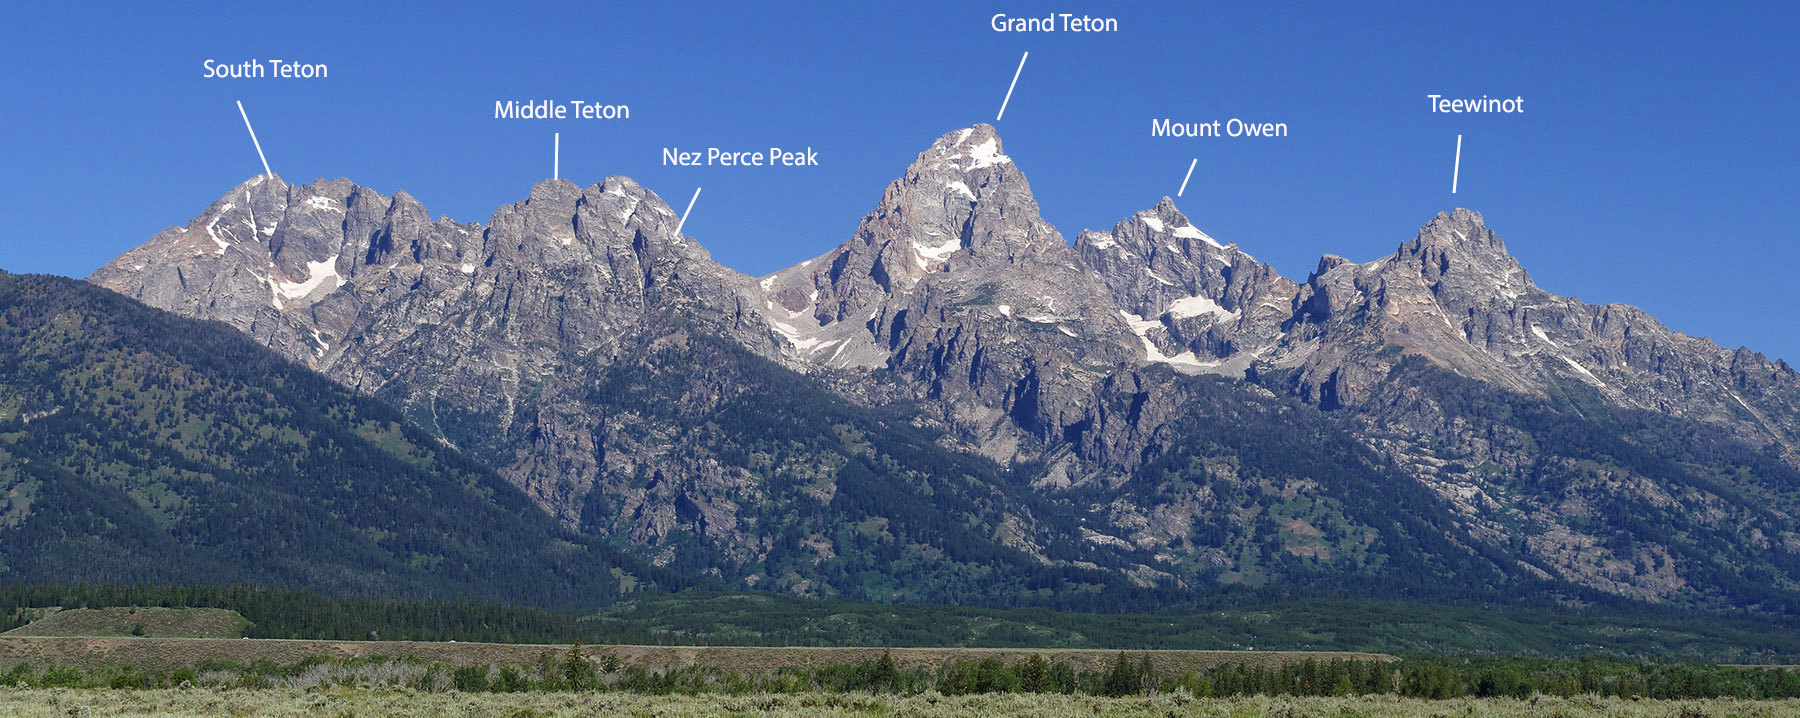 Major mountain peaks named.